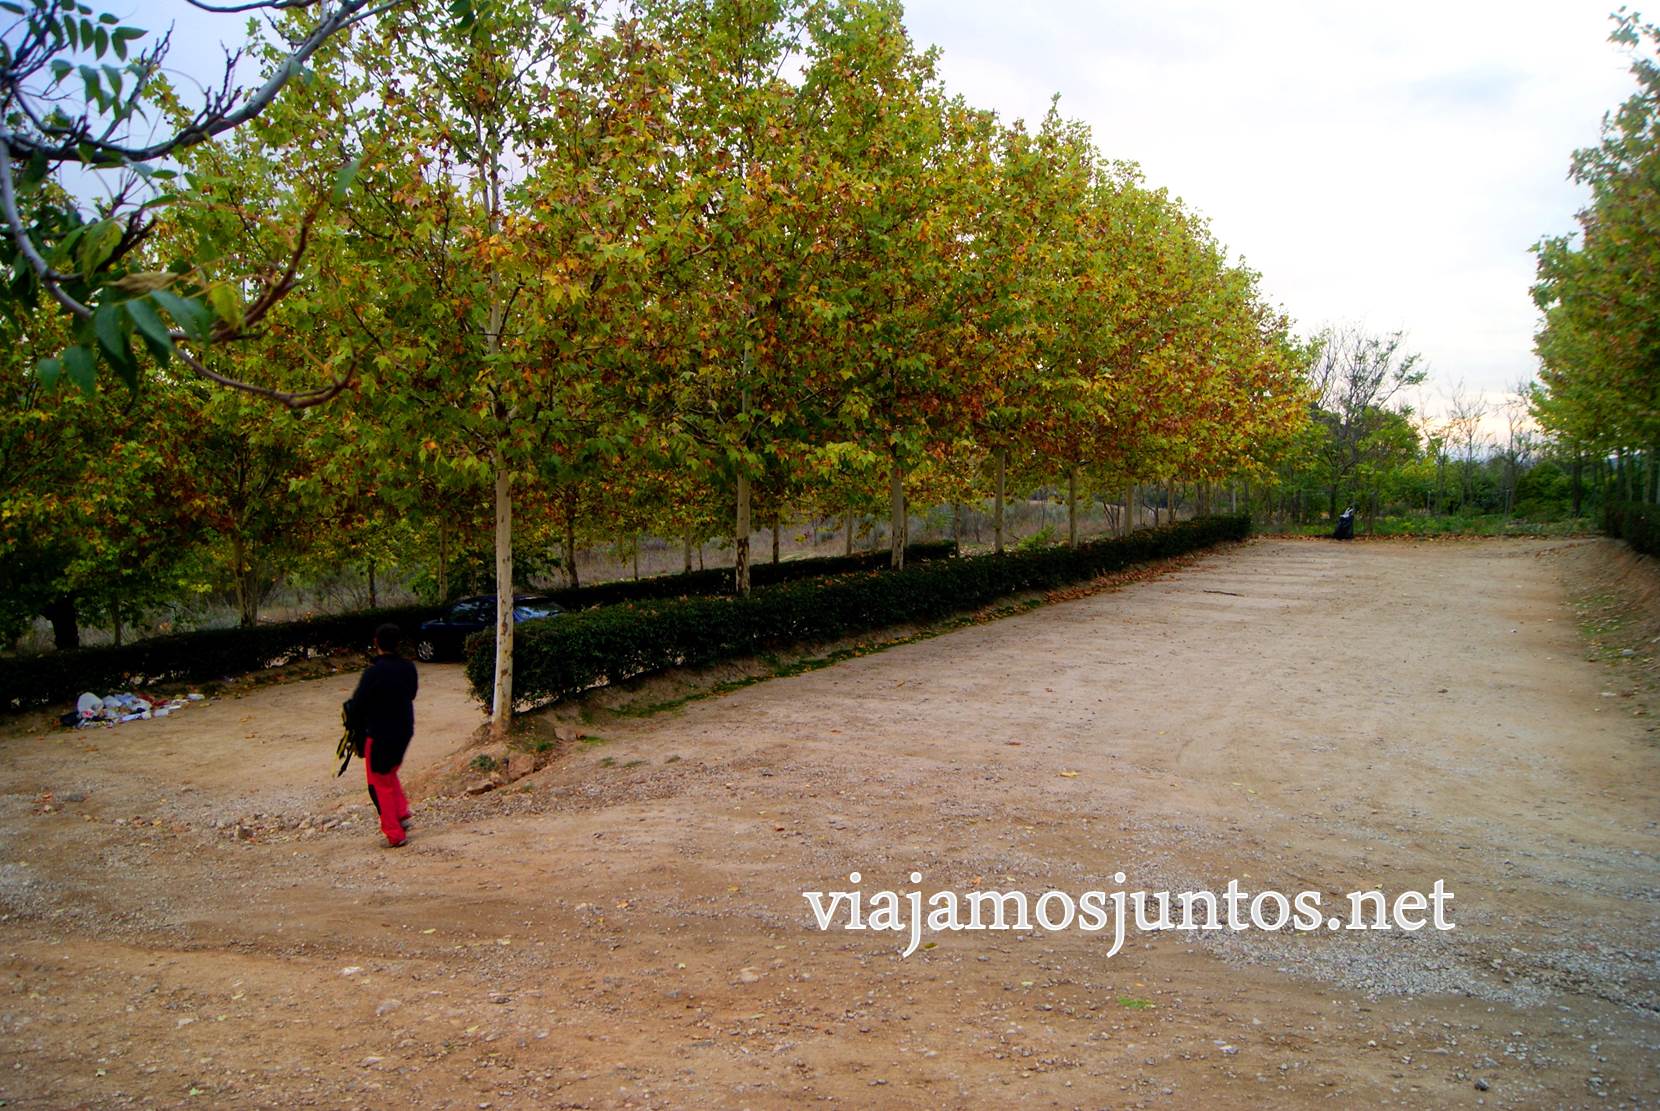 Ruta a las Cárcavas, Patones, Madrid; senderismo por sitios singulares de la Comunidad de Madrid; parking de inicio